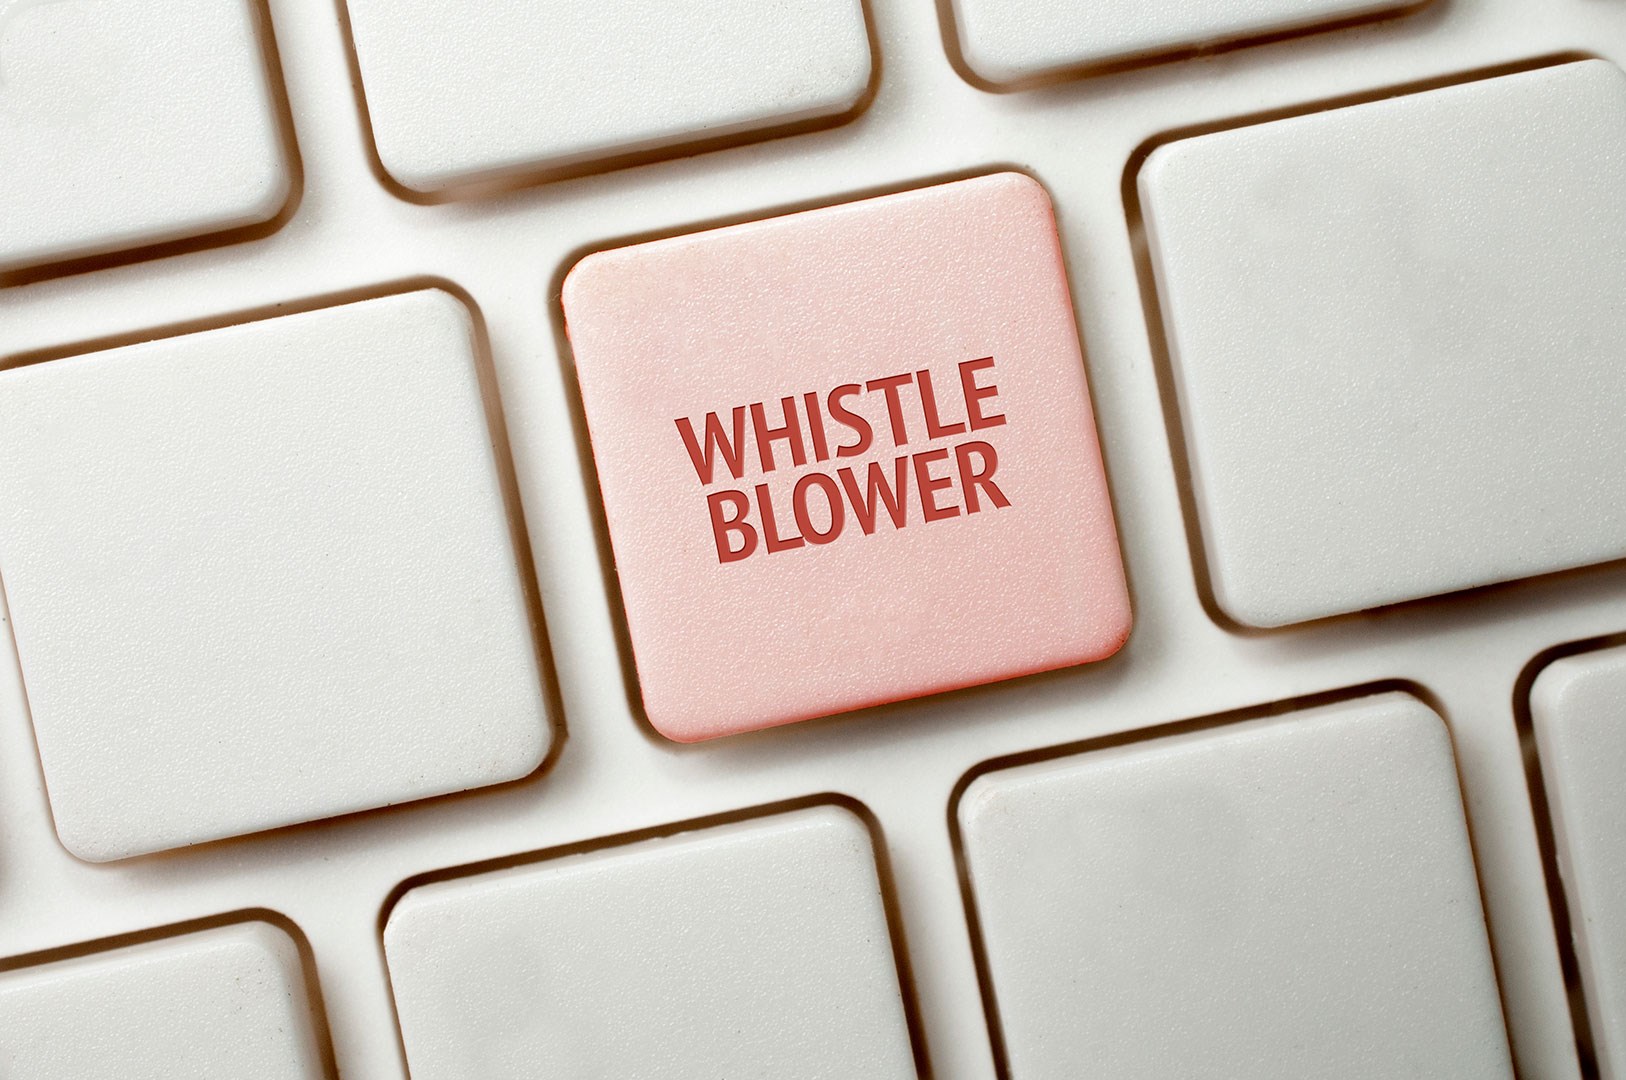 Tastatur hvor en knap har ordlyden Whistleblower